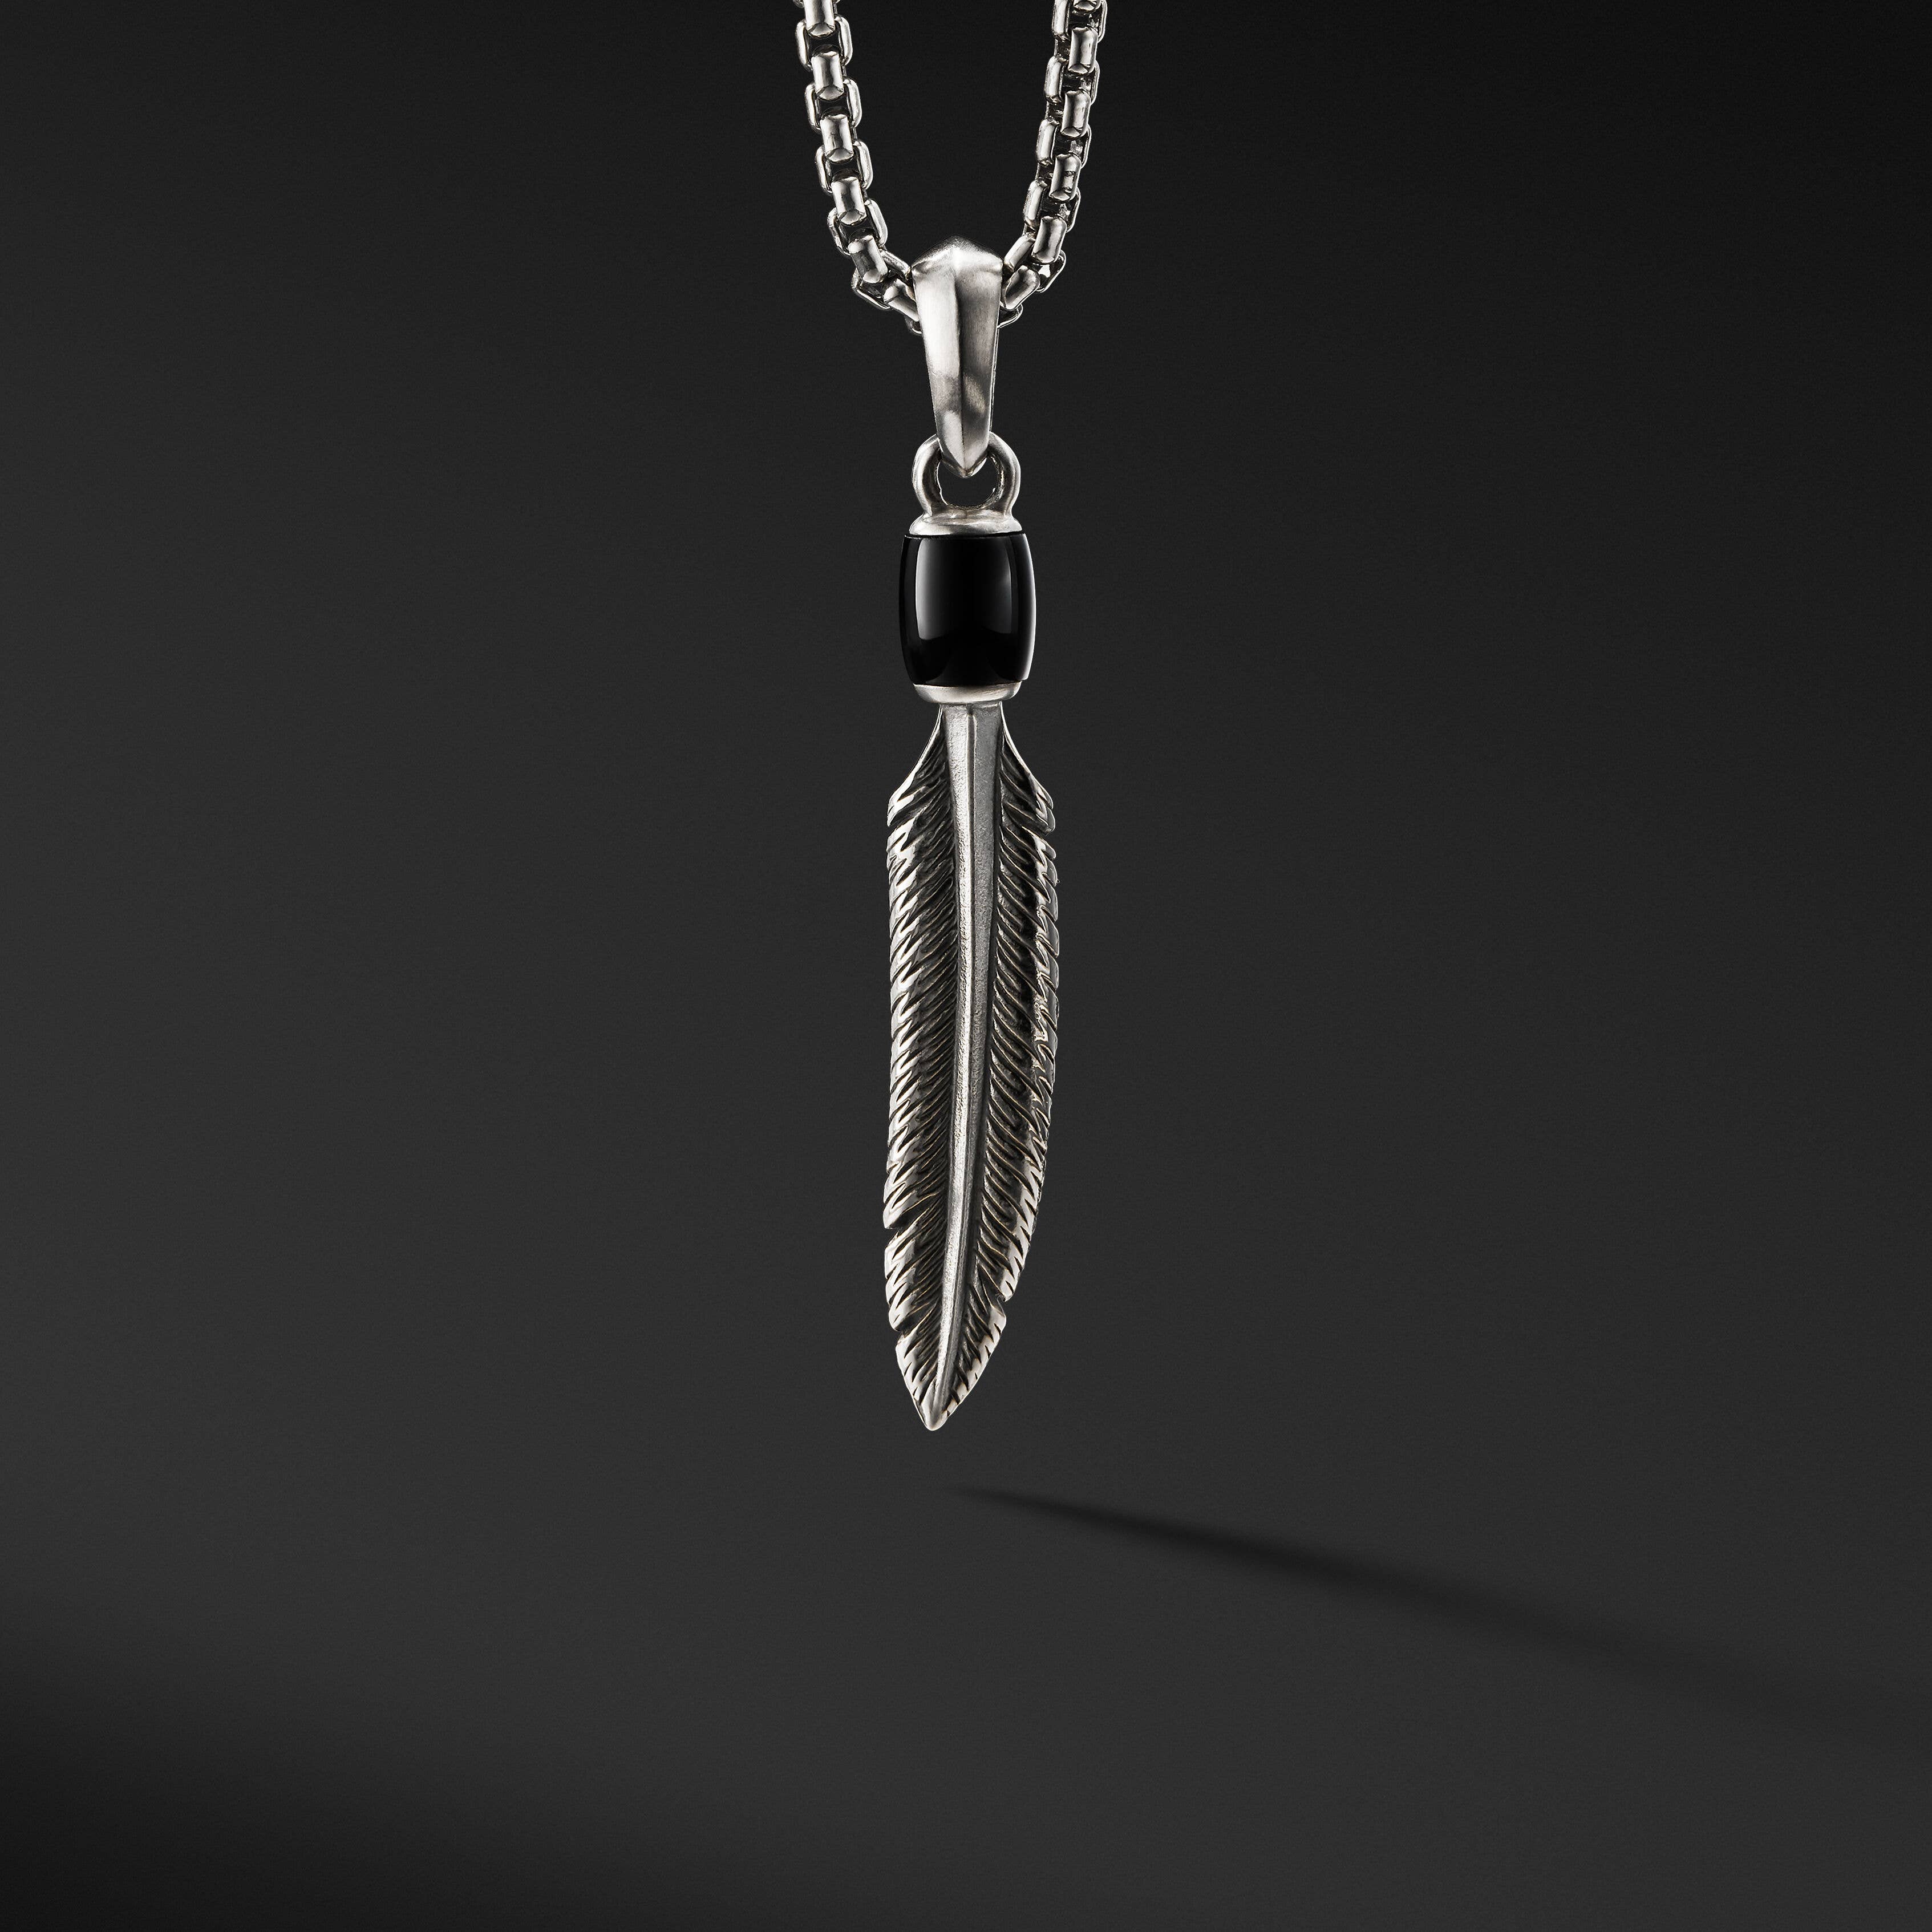 Southwest Feather Amulet with Black Onyx